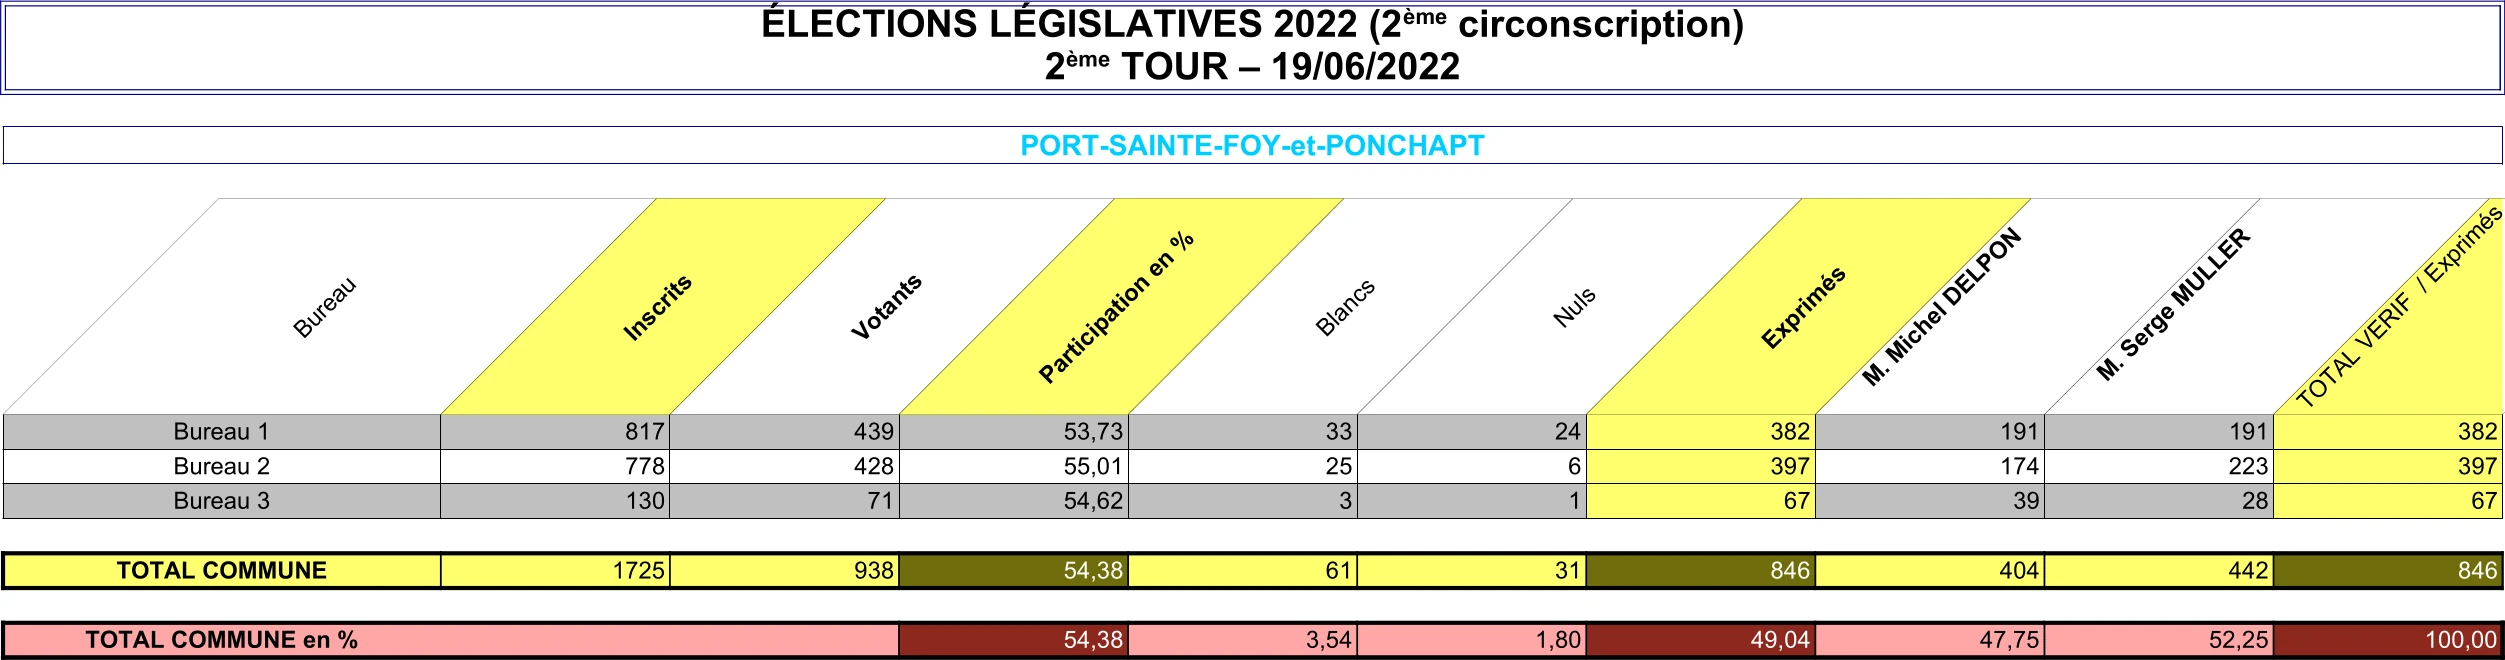 Élections Législatives 2022 - Commune - 2ème circonscription - 2ème tour